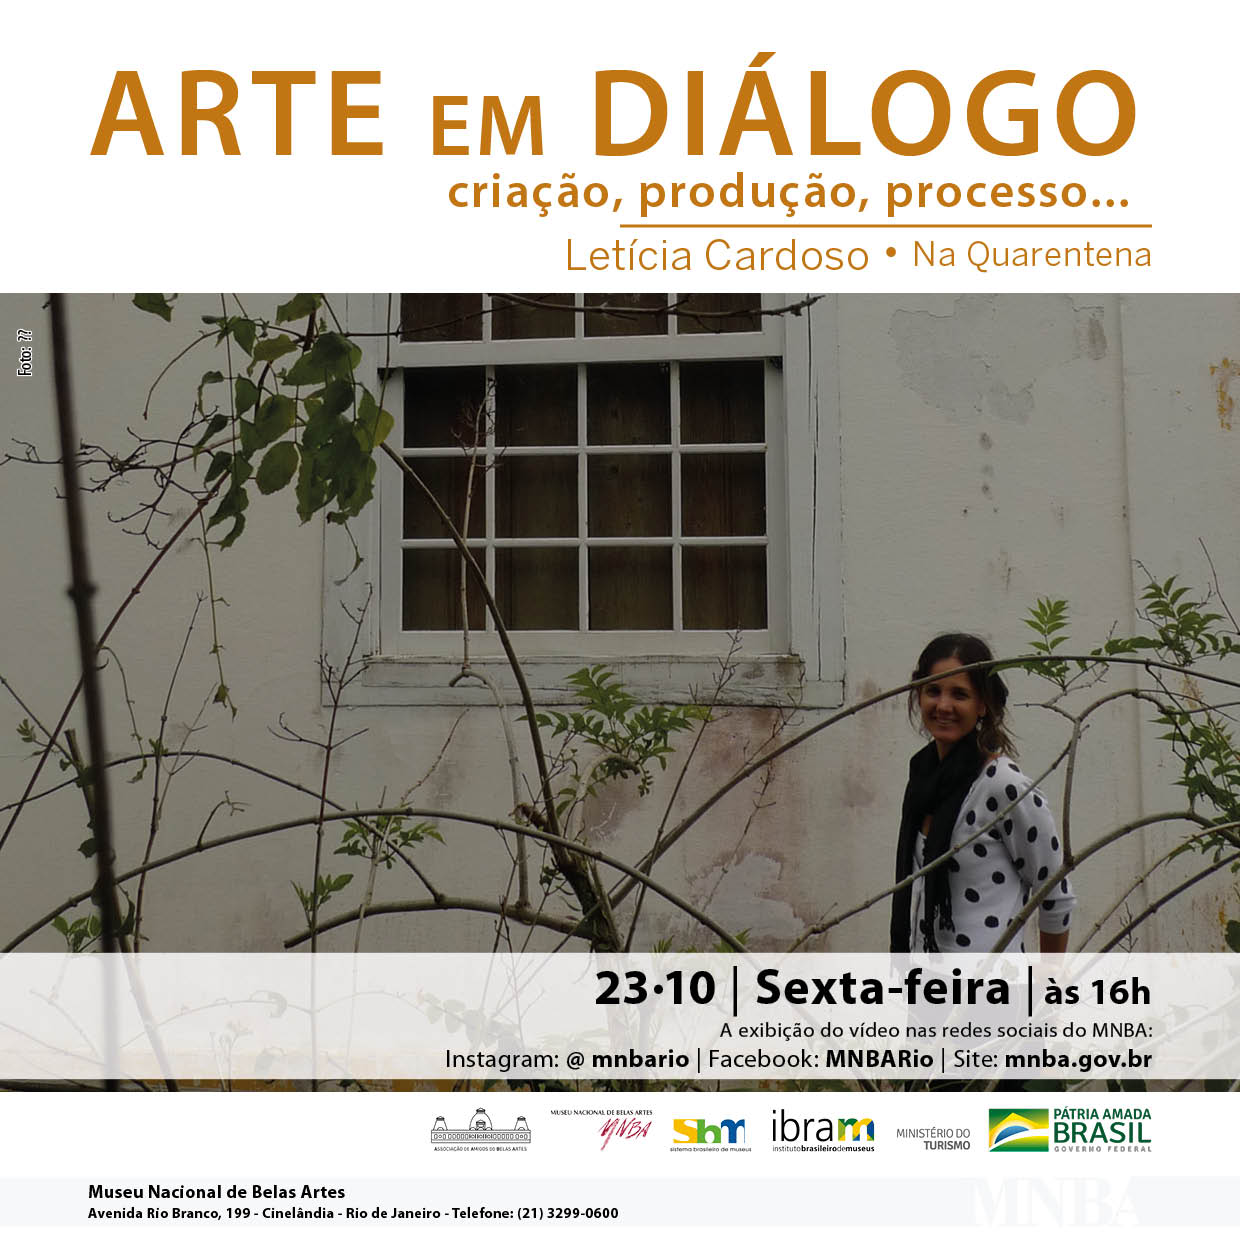 Projeto Arte em Diálogo, na Quarentena, com Letícia Cardoso. Divulgação.